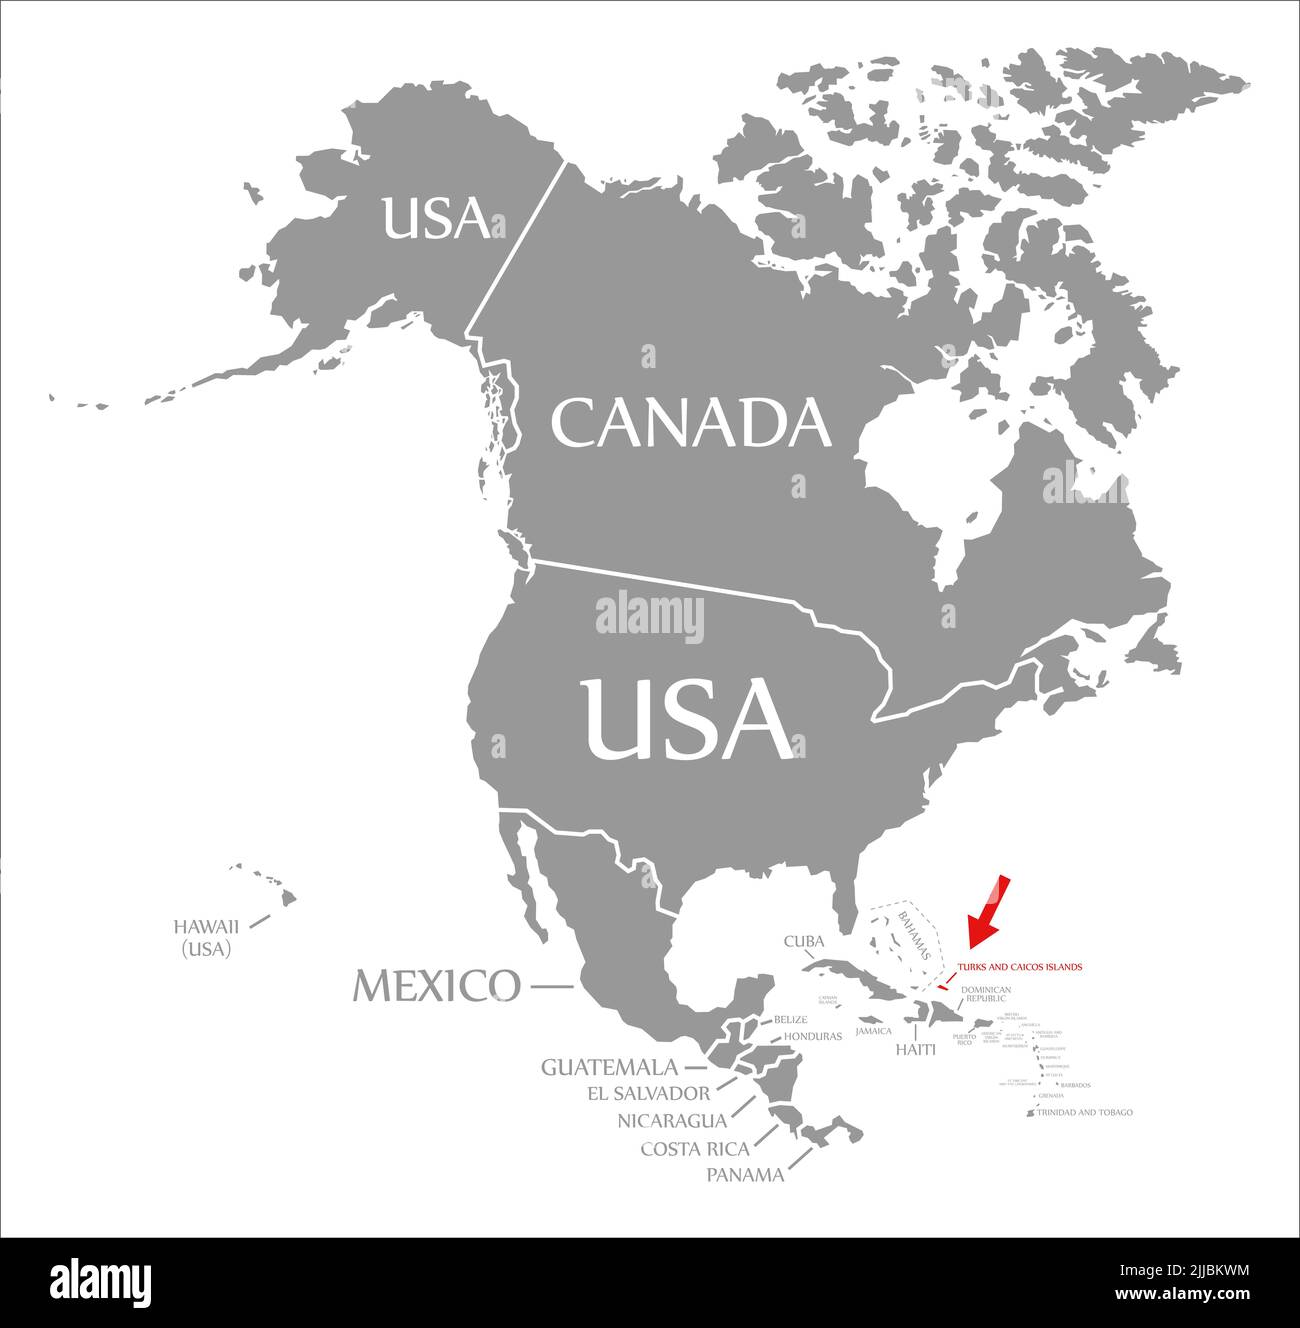 Islas Turcas y Caicos resaltadas en rojo en el mapa de América del Norte Foto de stock